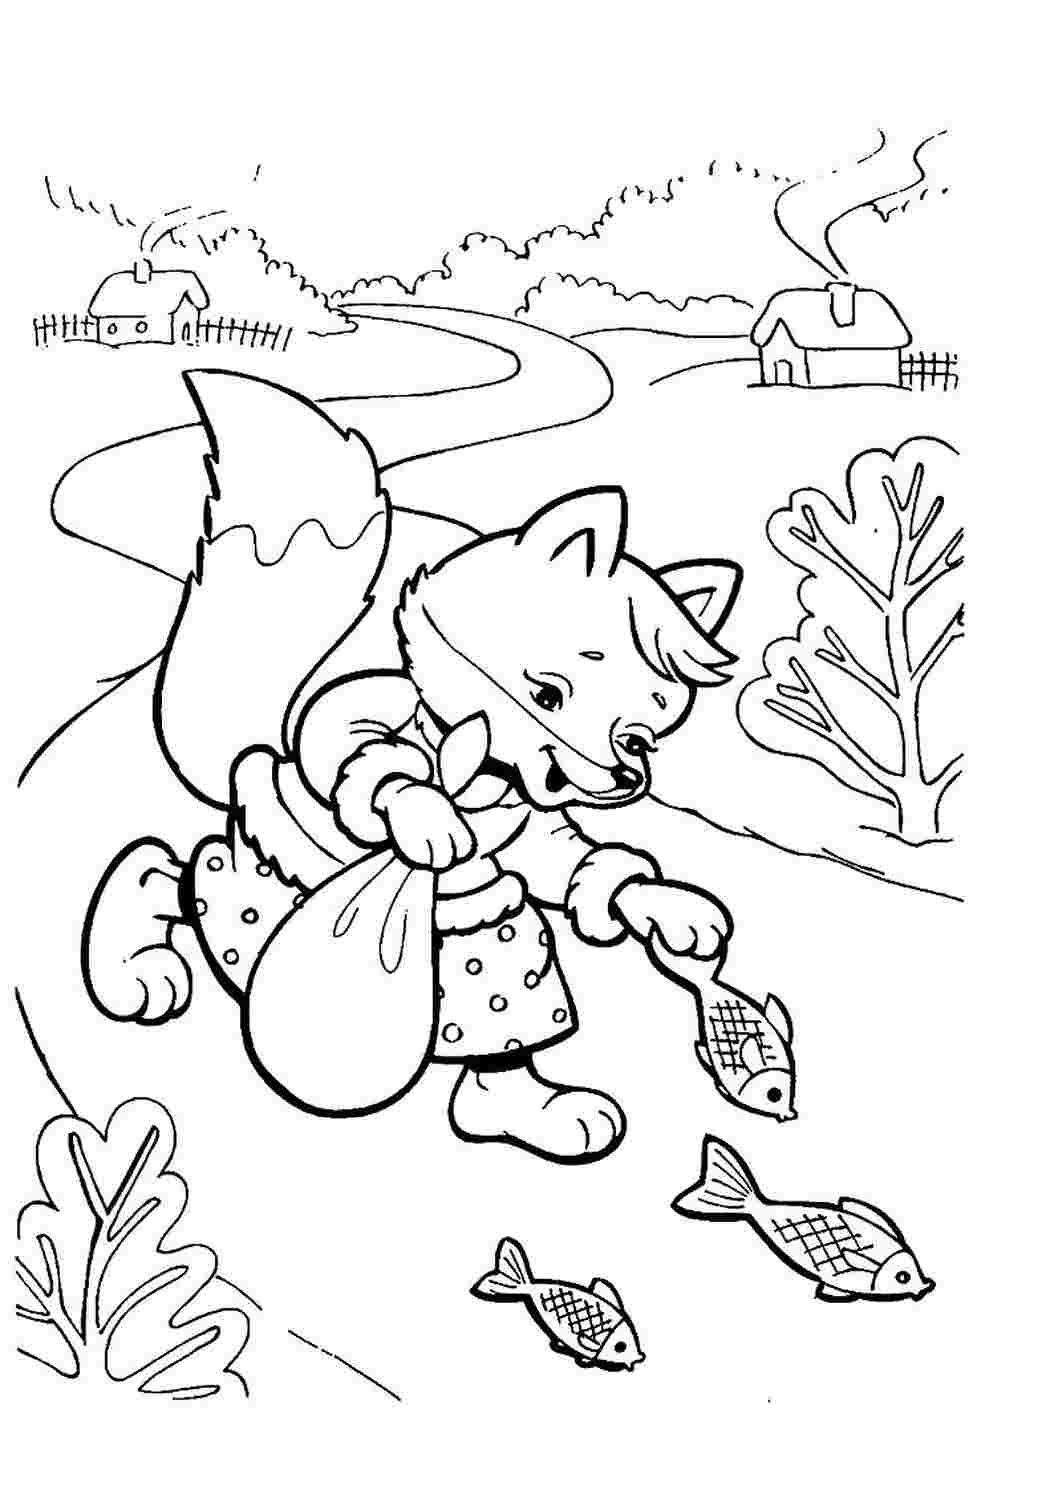 Раскраска к сказке Волк и лиса распечатать для детей бесплатно